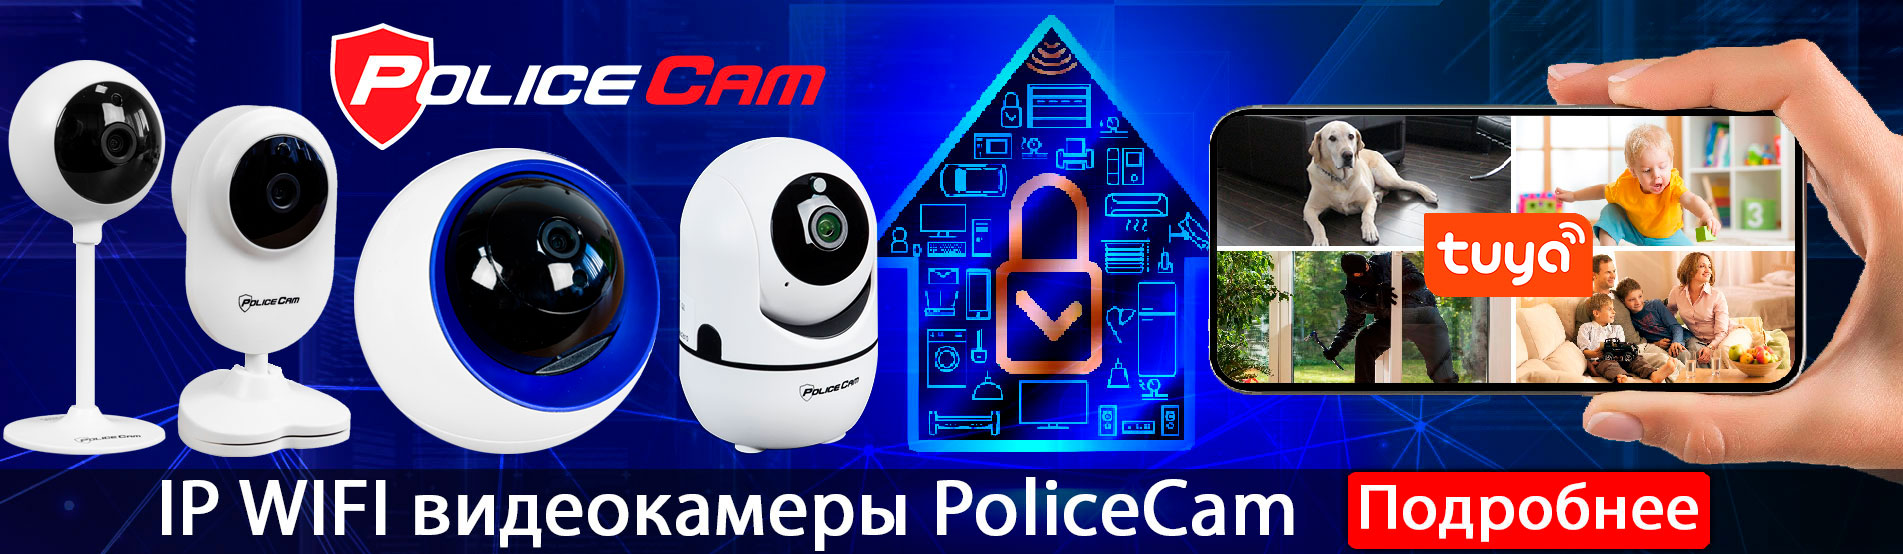 картинка новые wifi видеокамеры policecam